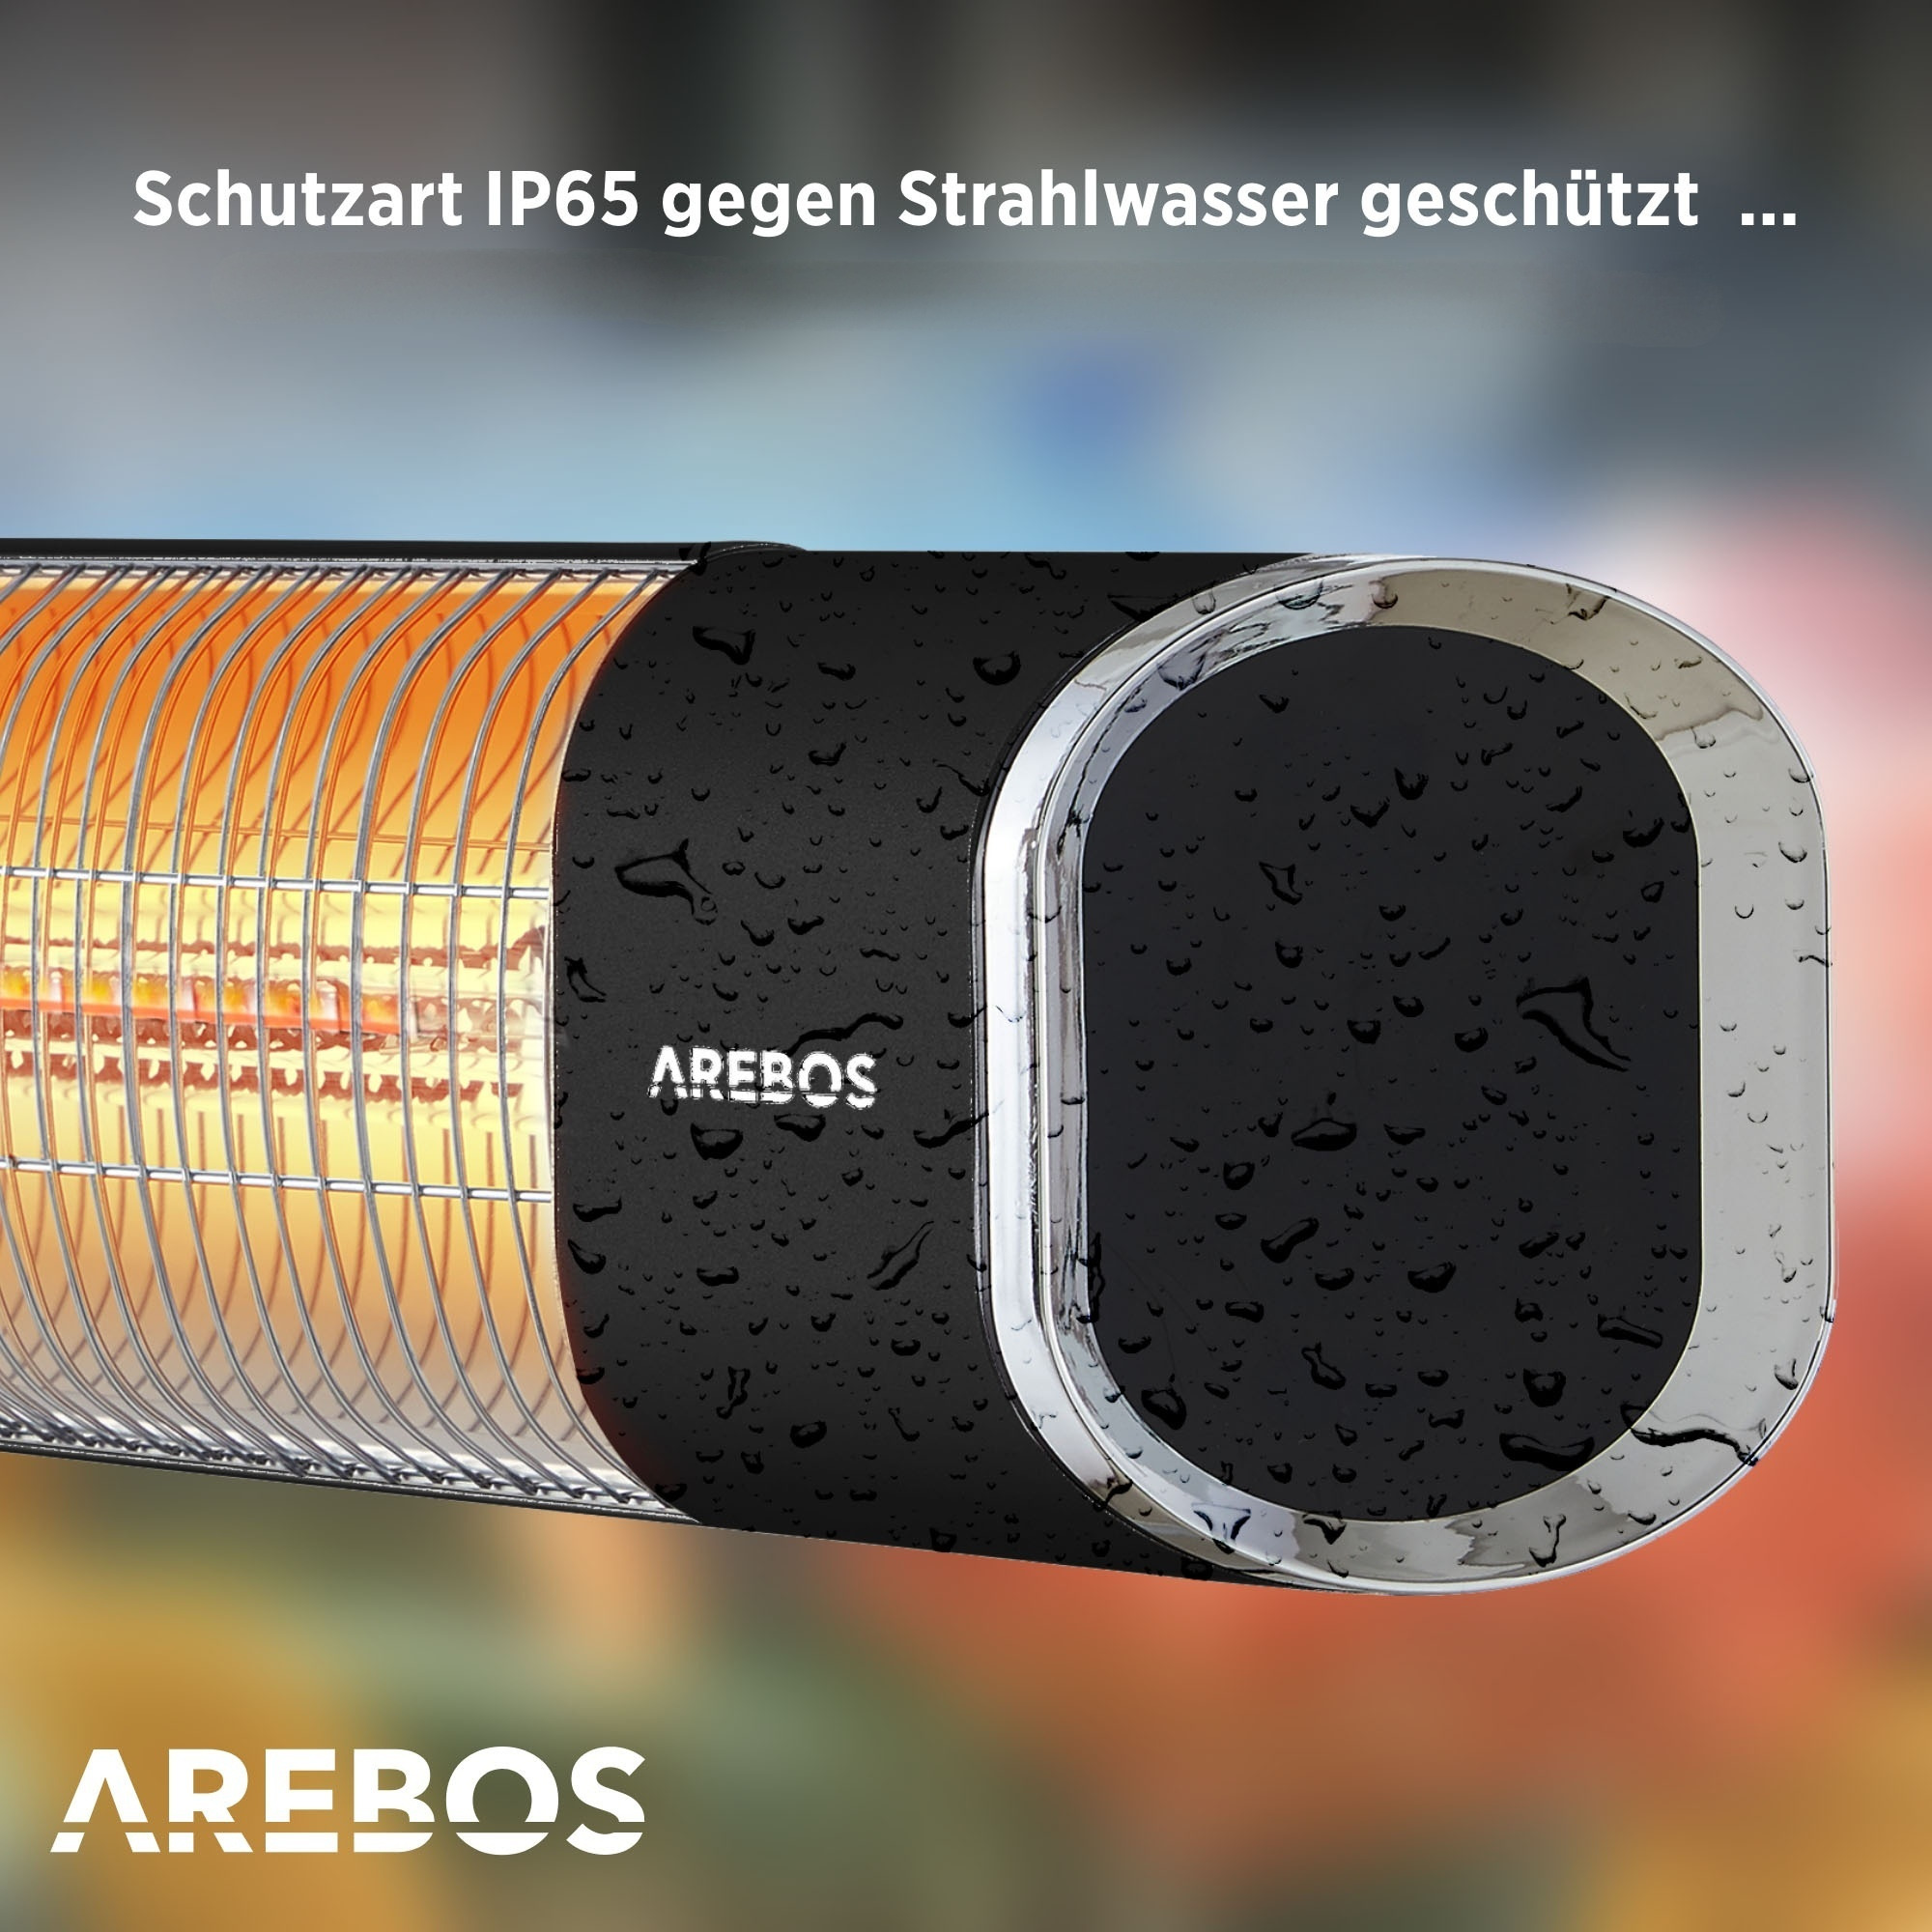 AREBOS mit Fernbedienung | mit | Schwarz 60° Neigungswinkel Heizstrahler, Kreuzstativ Höhenverstellbar | Infrarot